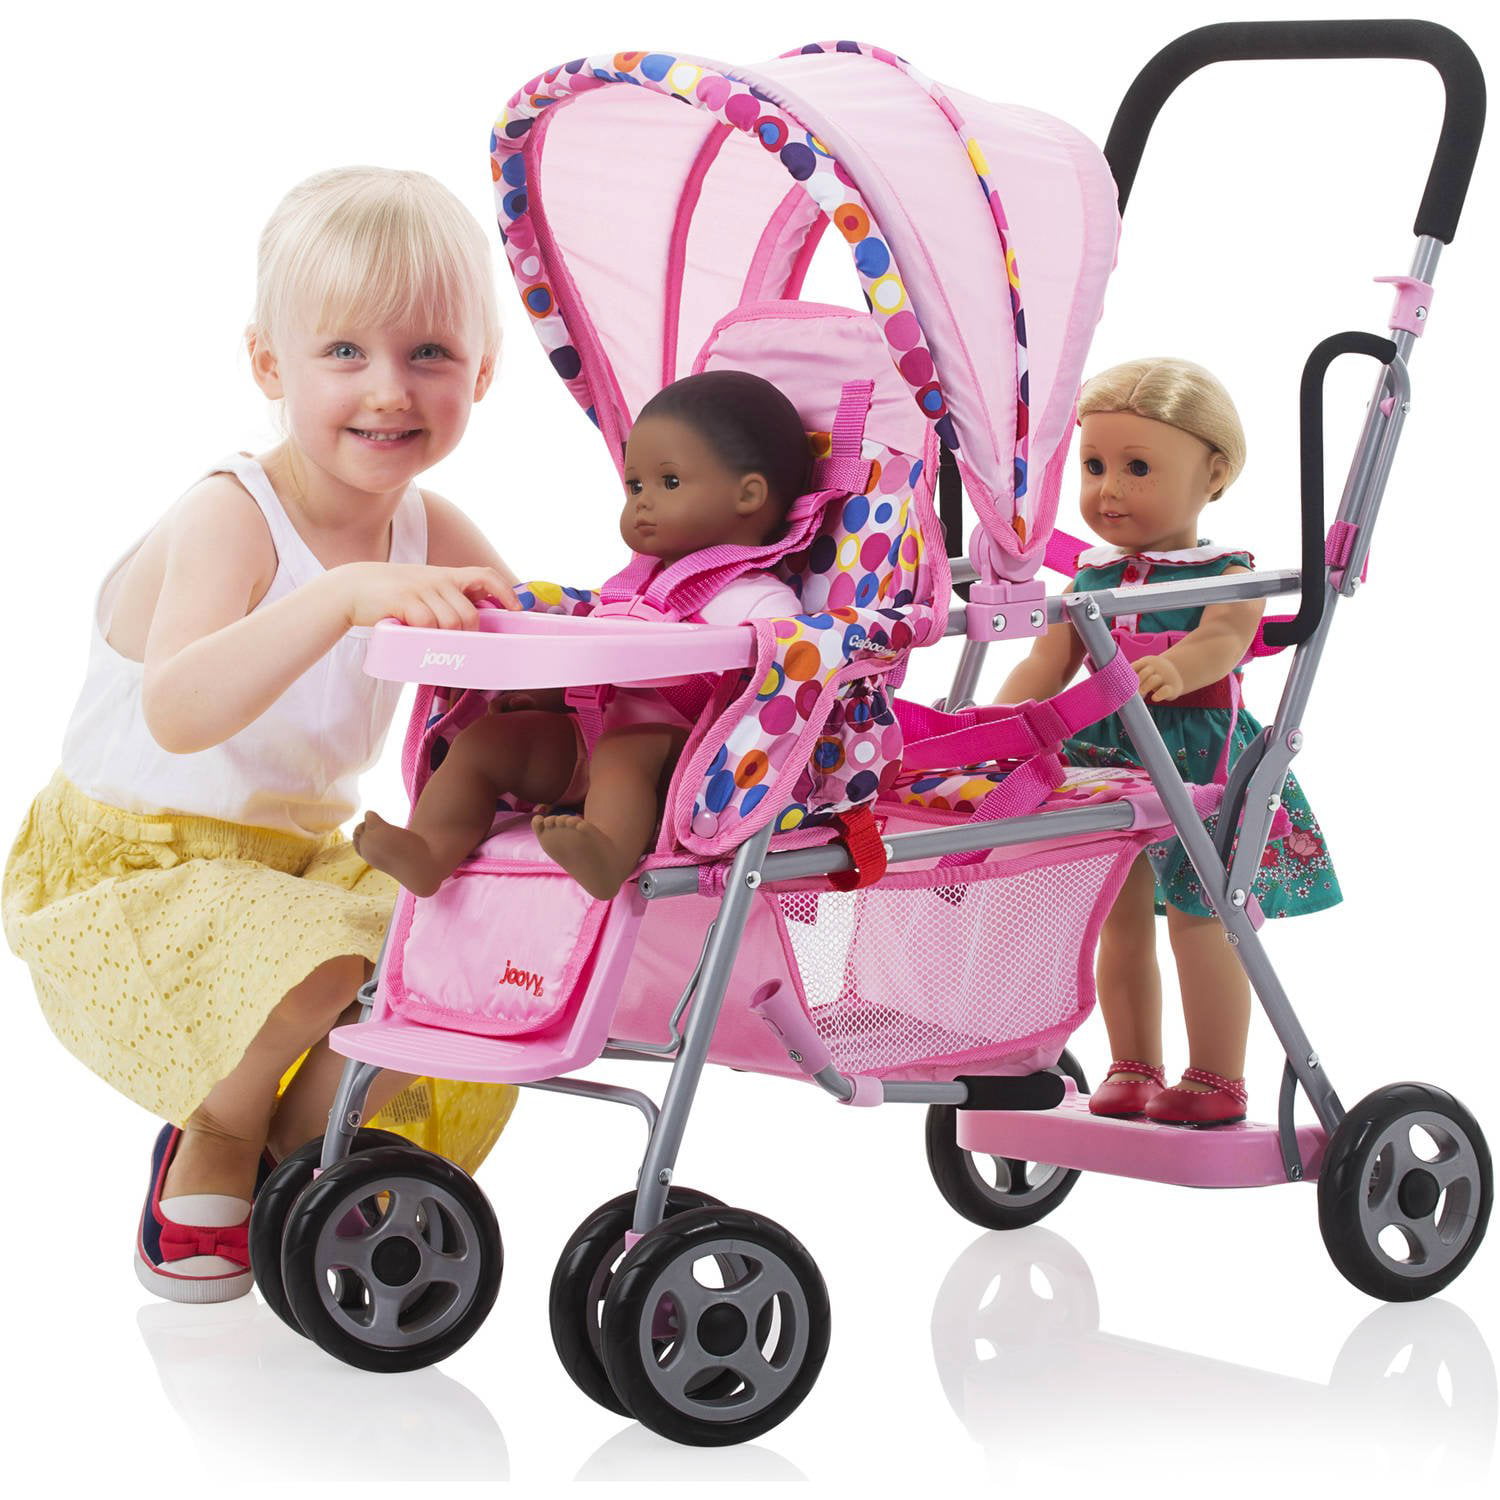 joovy toy stroller pink